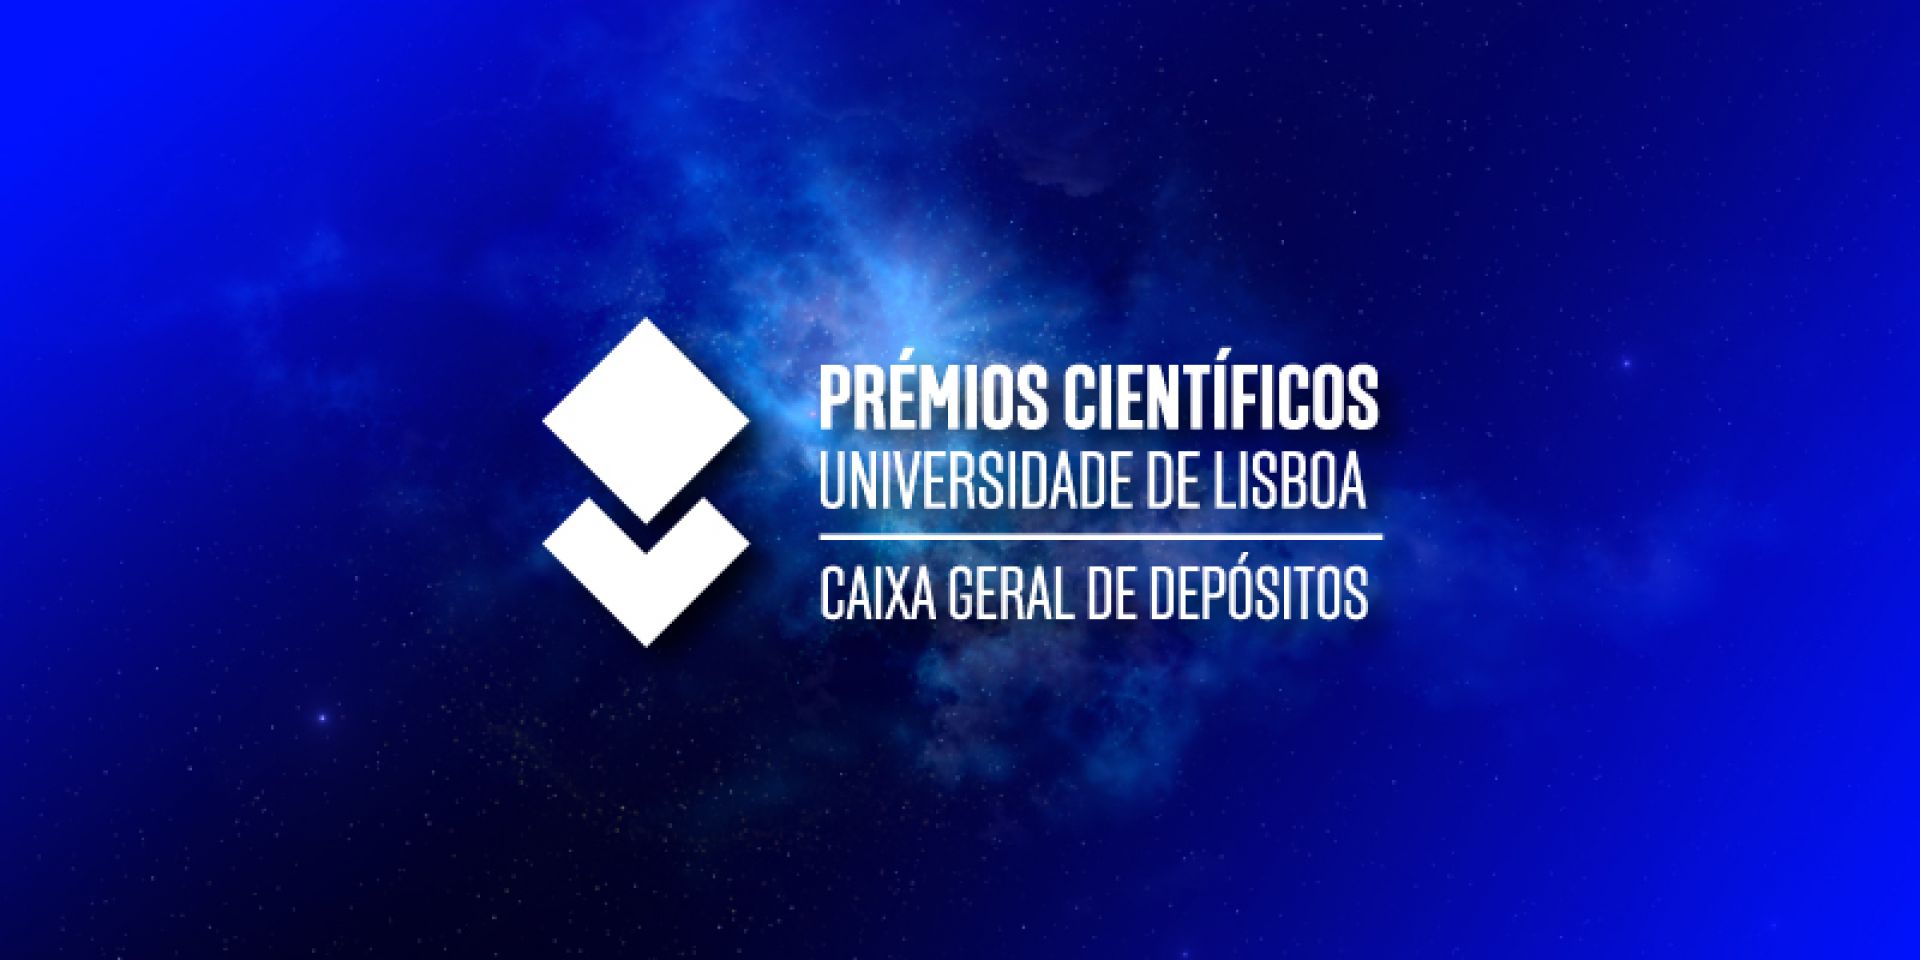 Prémios Científicos Universidade de Lisboa/Caixa Geral de Depósitos